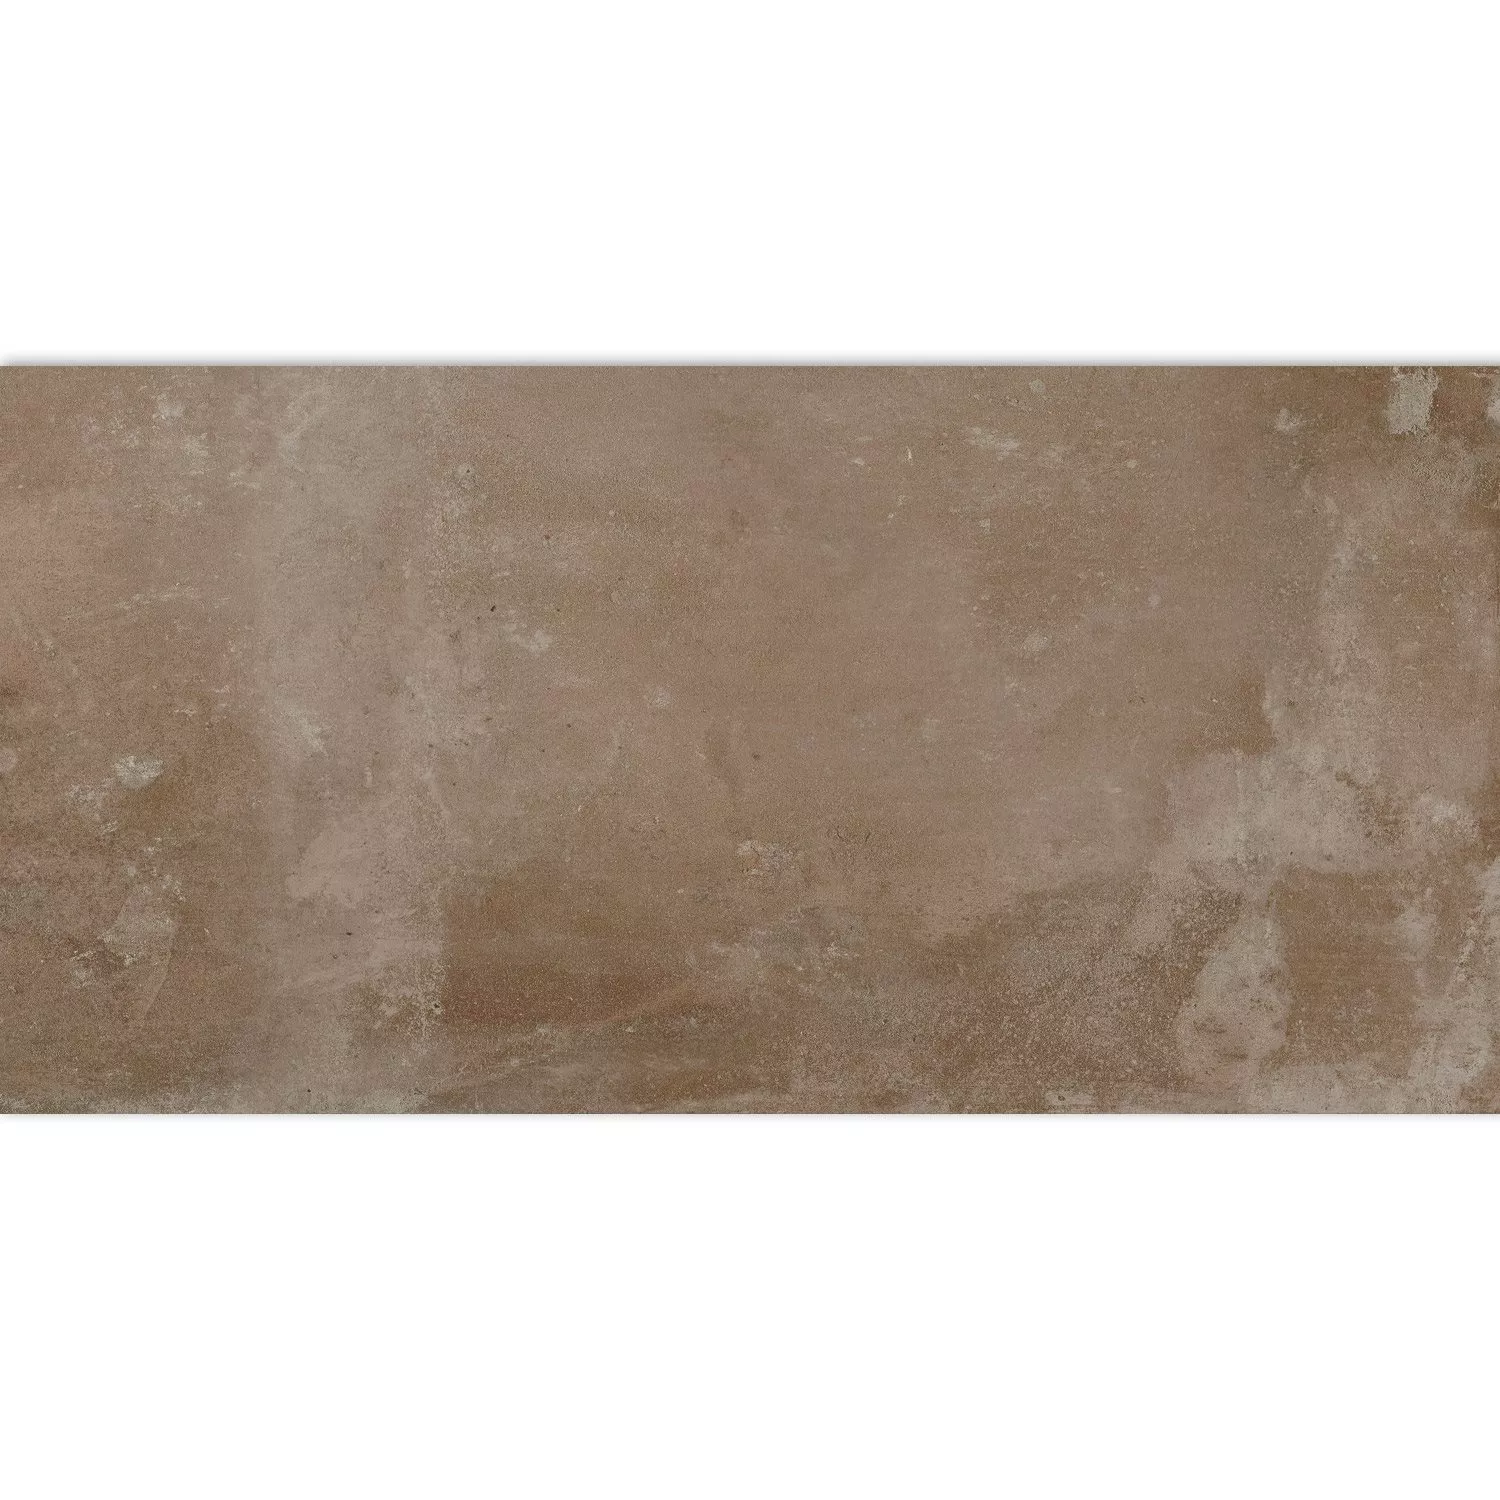 Piastrelle Ottica Di Cemento Maryland Marrone 30x60cm